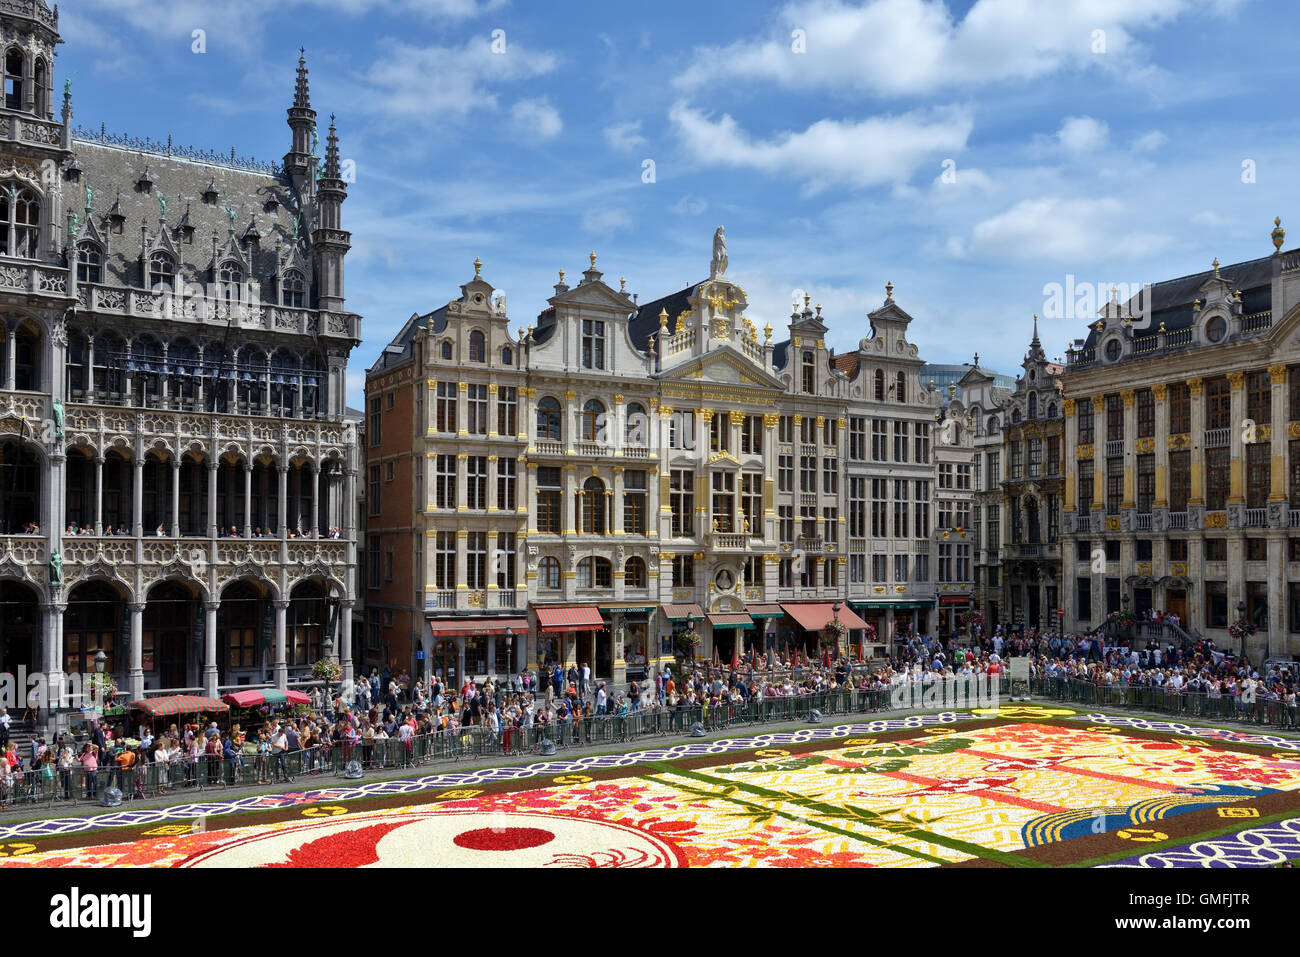 Menschen bewundern auf Samstag, 13. August 2016 Blumenteppich am Grand Place in Brüssel, Belgien. Dieses Mal war das japanische Thema c Stockfoto